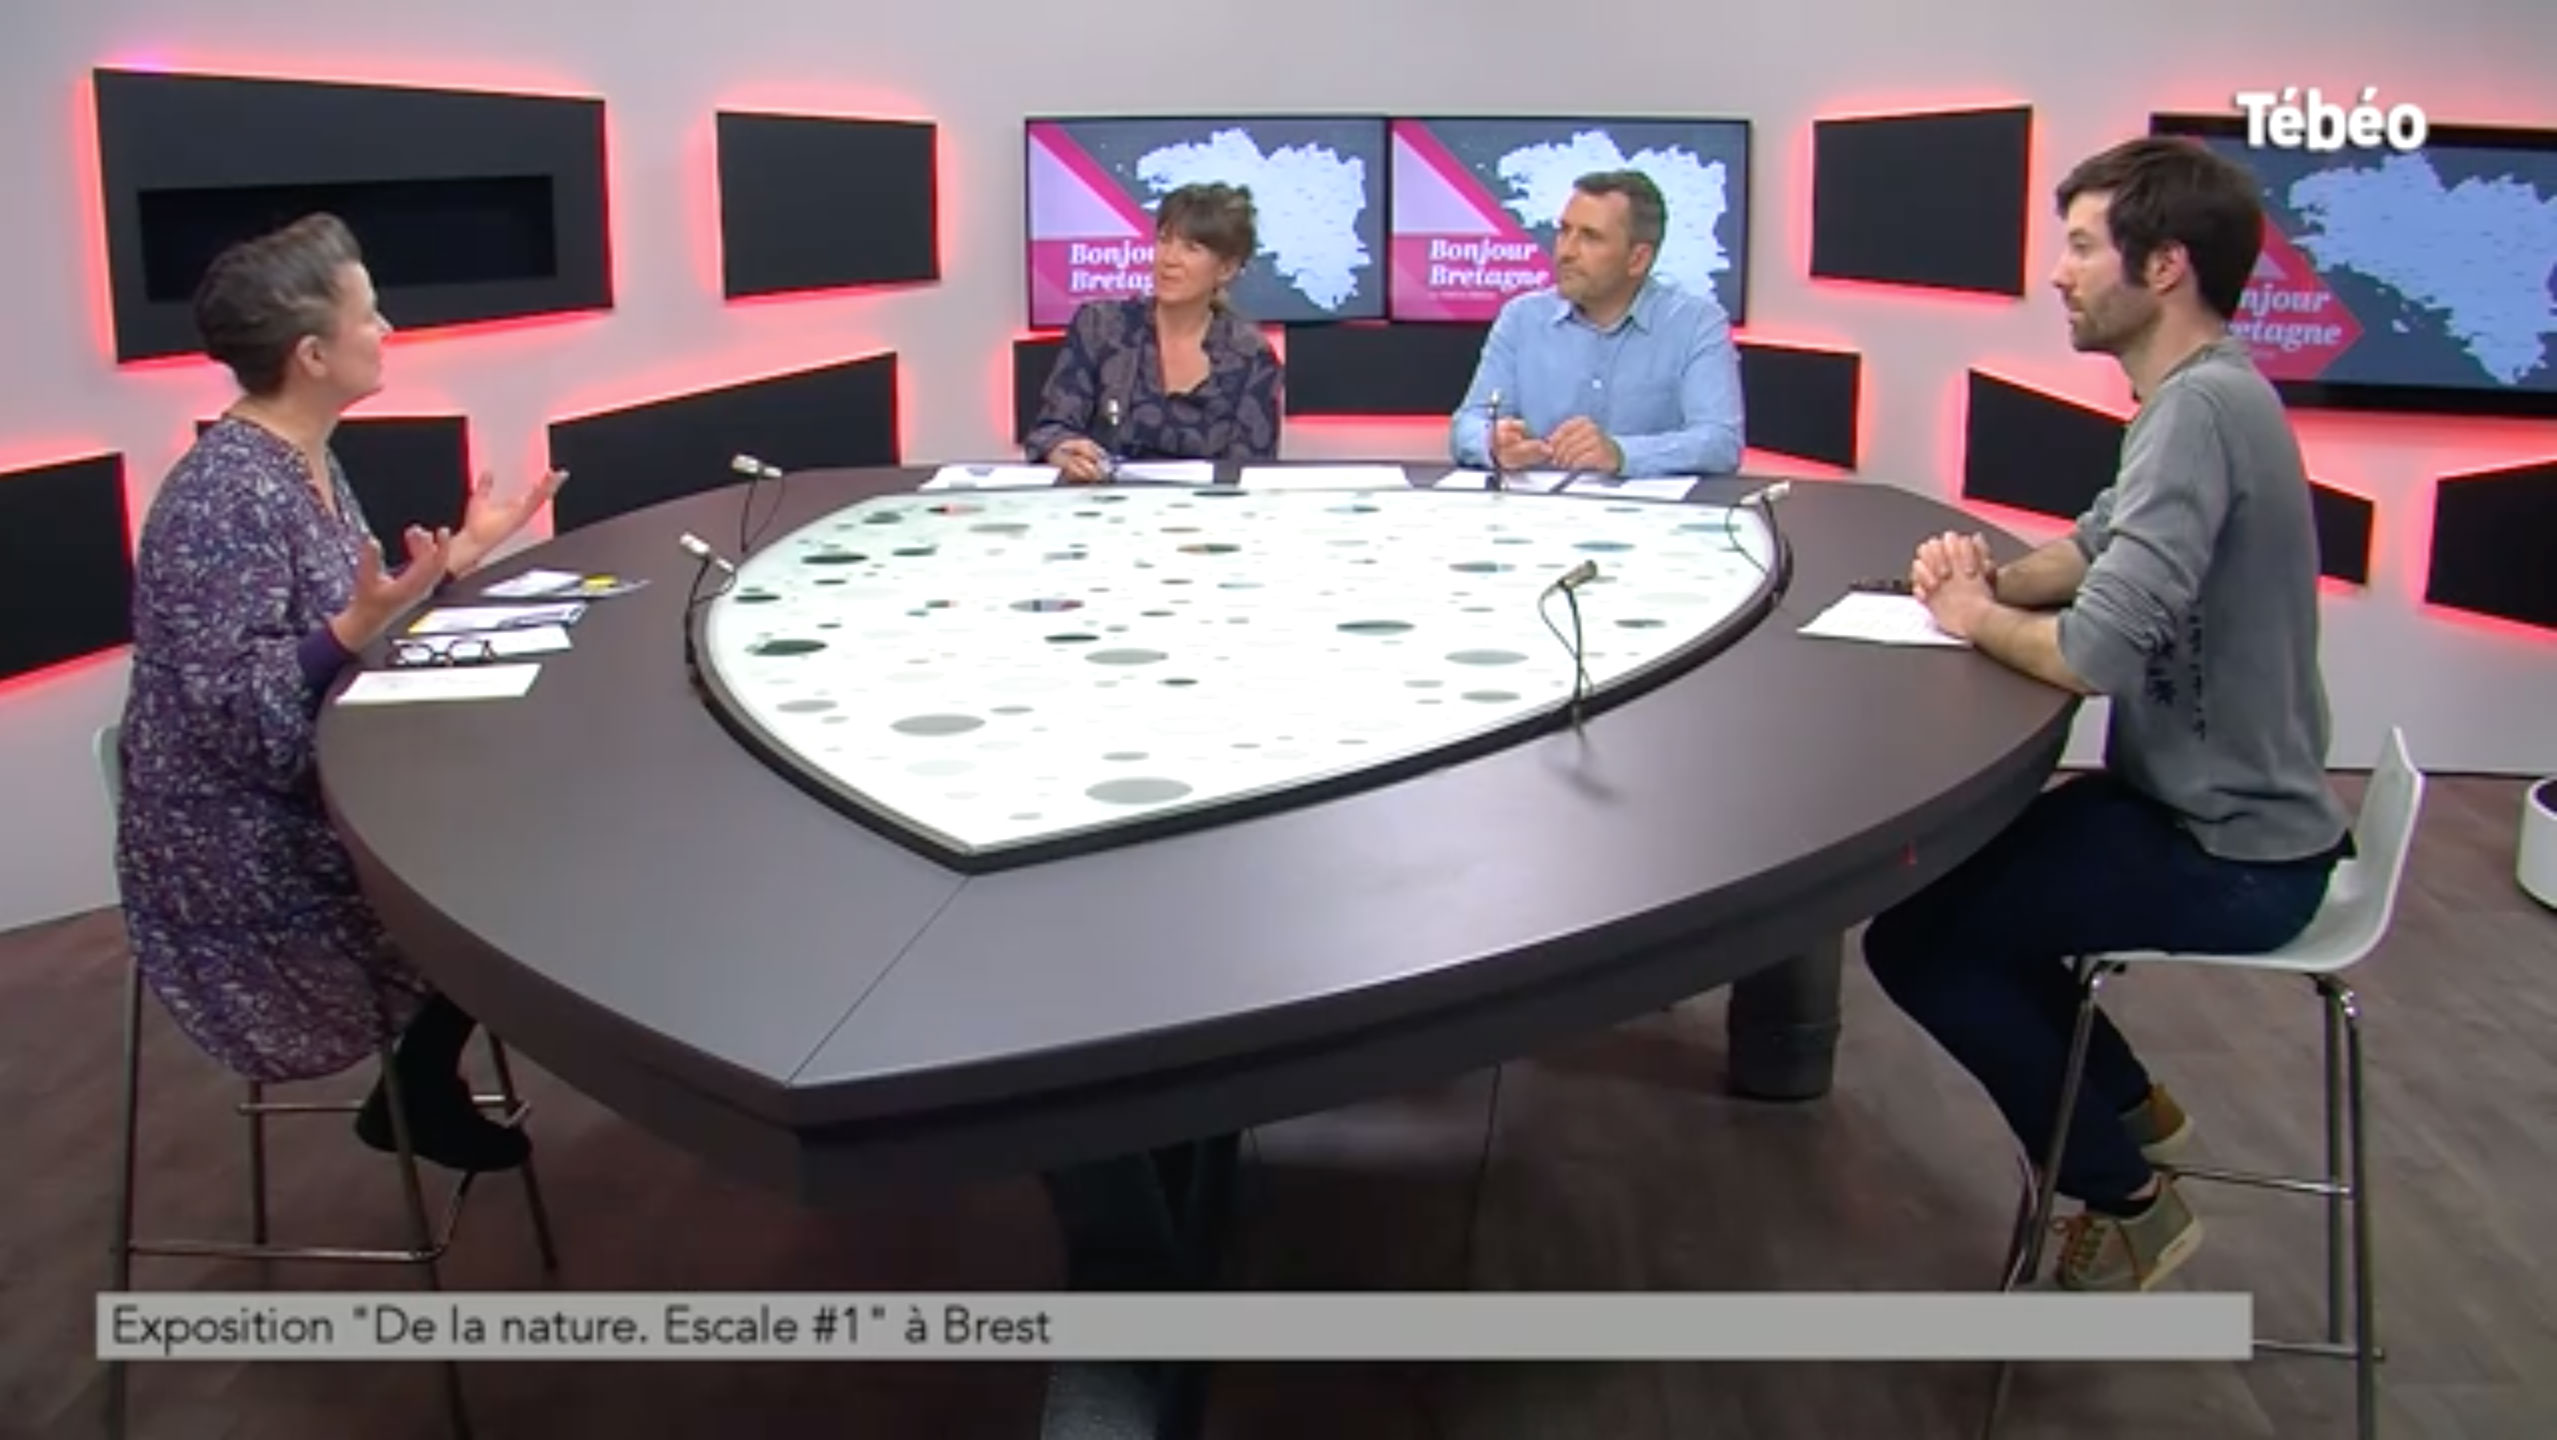 Interview de Marie-Claire Raoul sur Tébéo dans l'émission [Bonjour Bretagne] de Pauline Fercot, 22 mars 2022, Brest